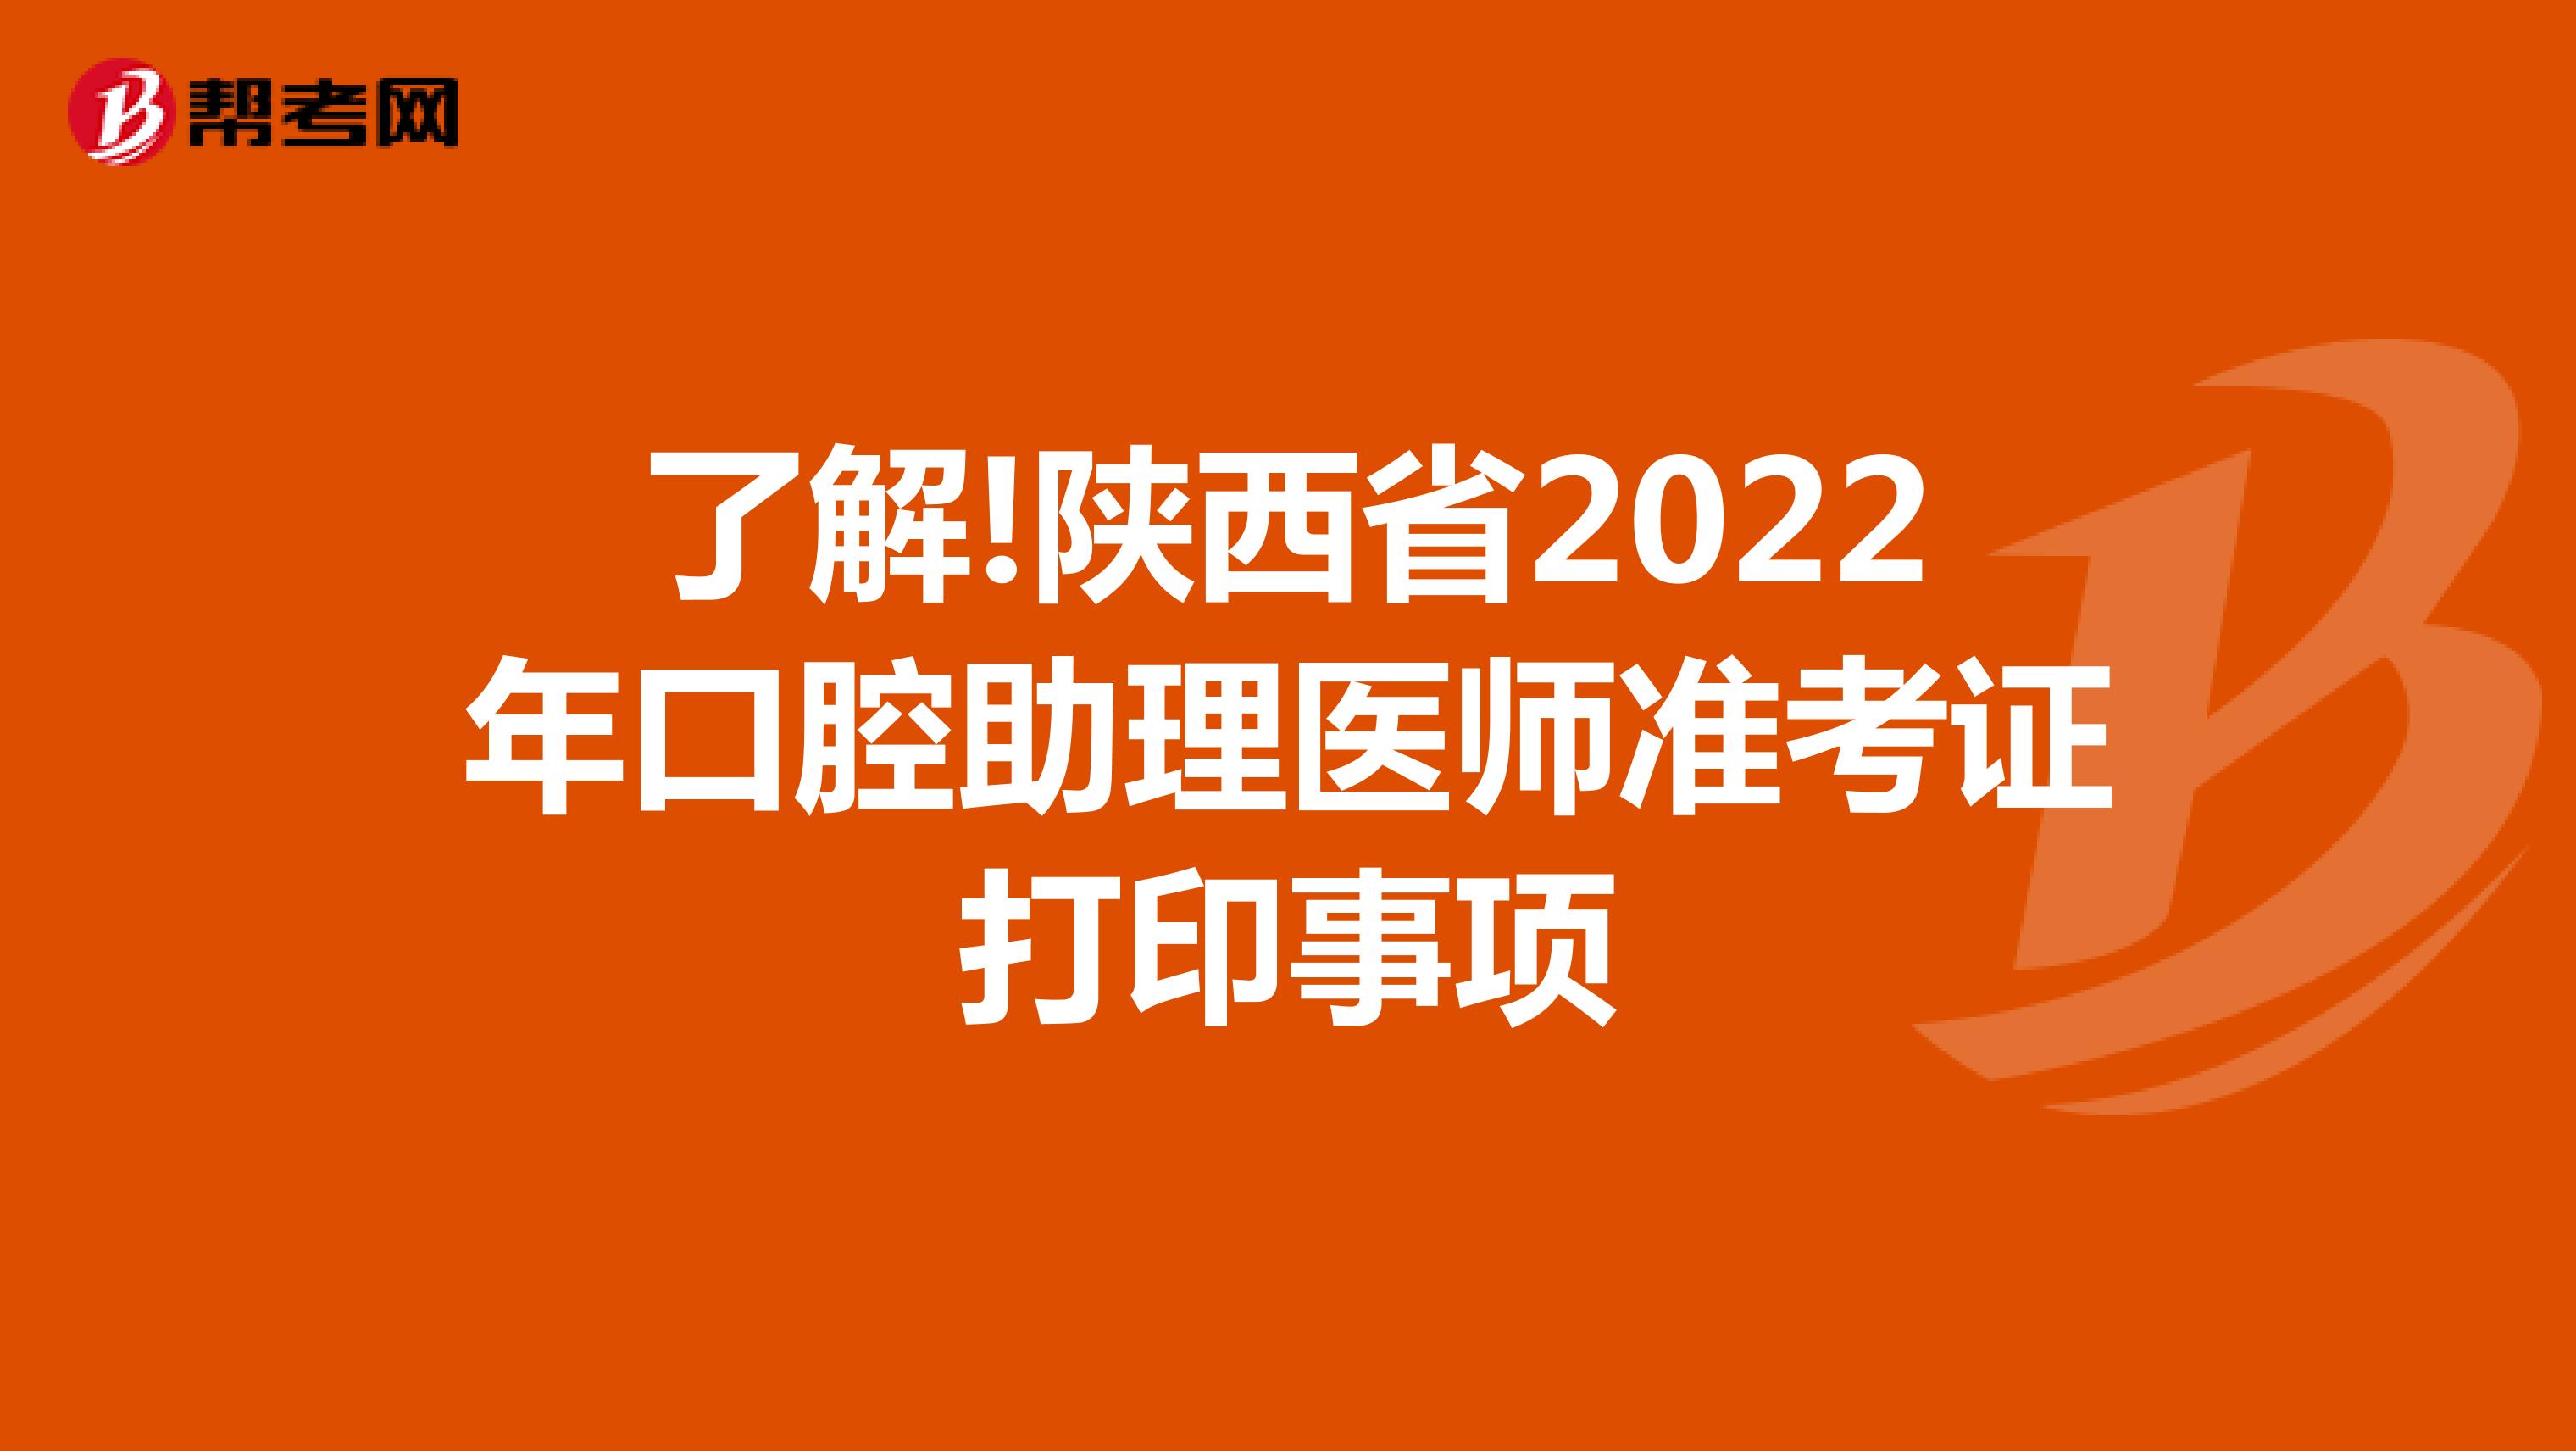 了解!陕西省2022年口腔助理医师准考证打印事项